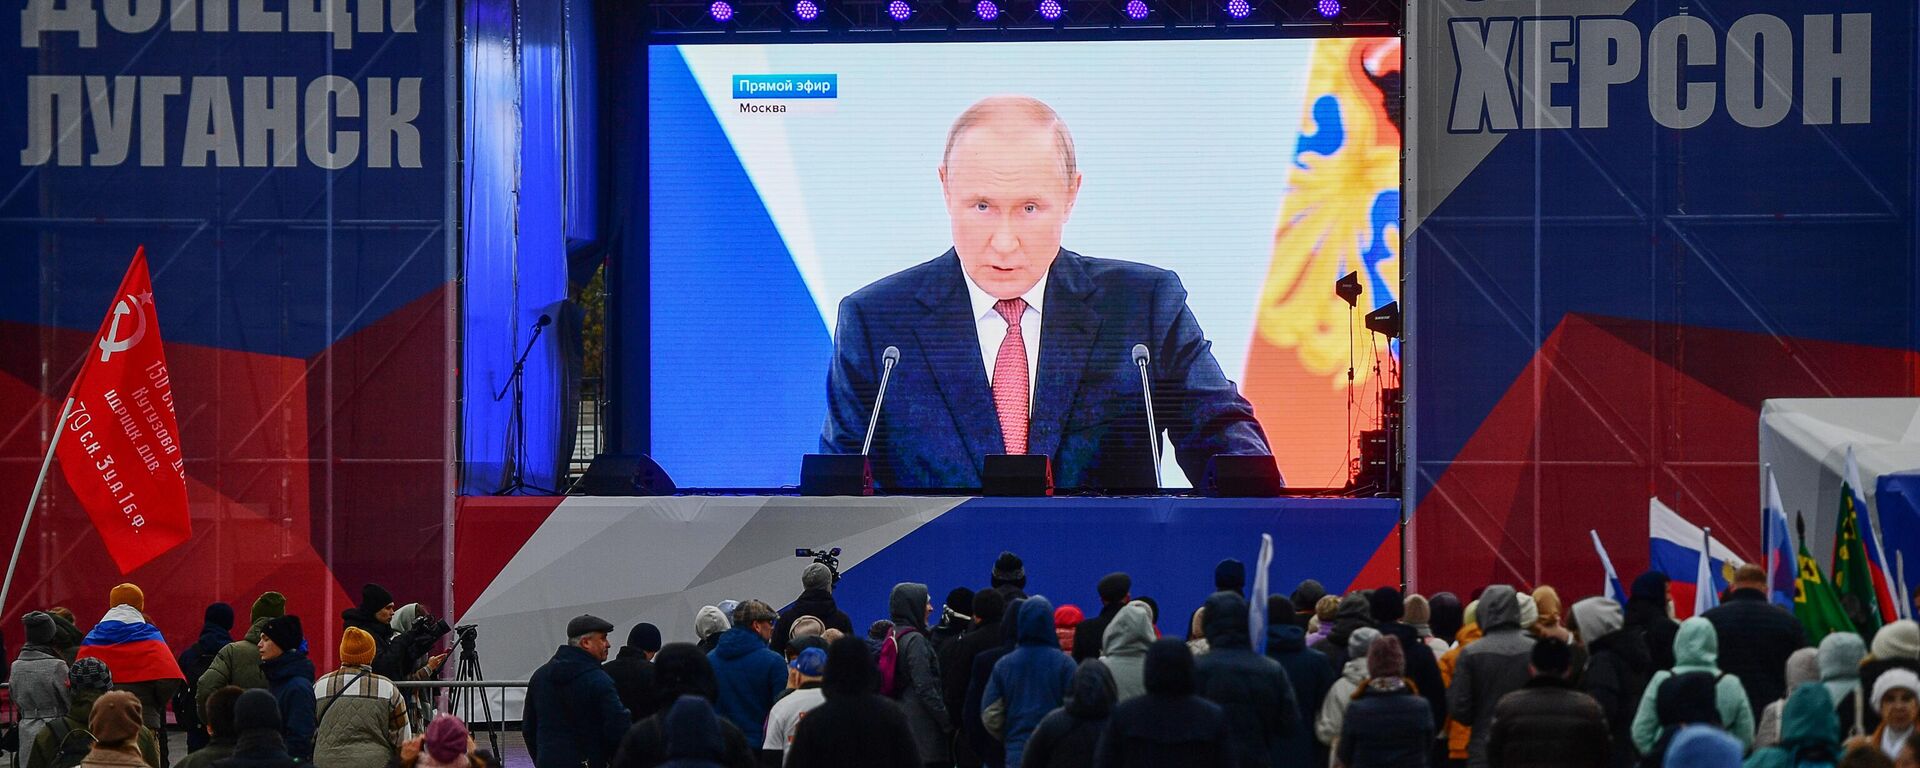 Truyền trực tiếp ở Yekaterinburg bài phát biểu của Tổng thống Nga Putin trong lễ ký thỏa thuận sáp nhập các khu vực DNR, LNR, Zaporozhye và Kherson vào Liên bang Nga. - Sputnik Việt Nam, 1920, 30.09.2022